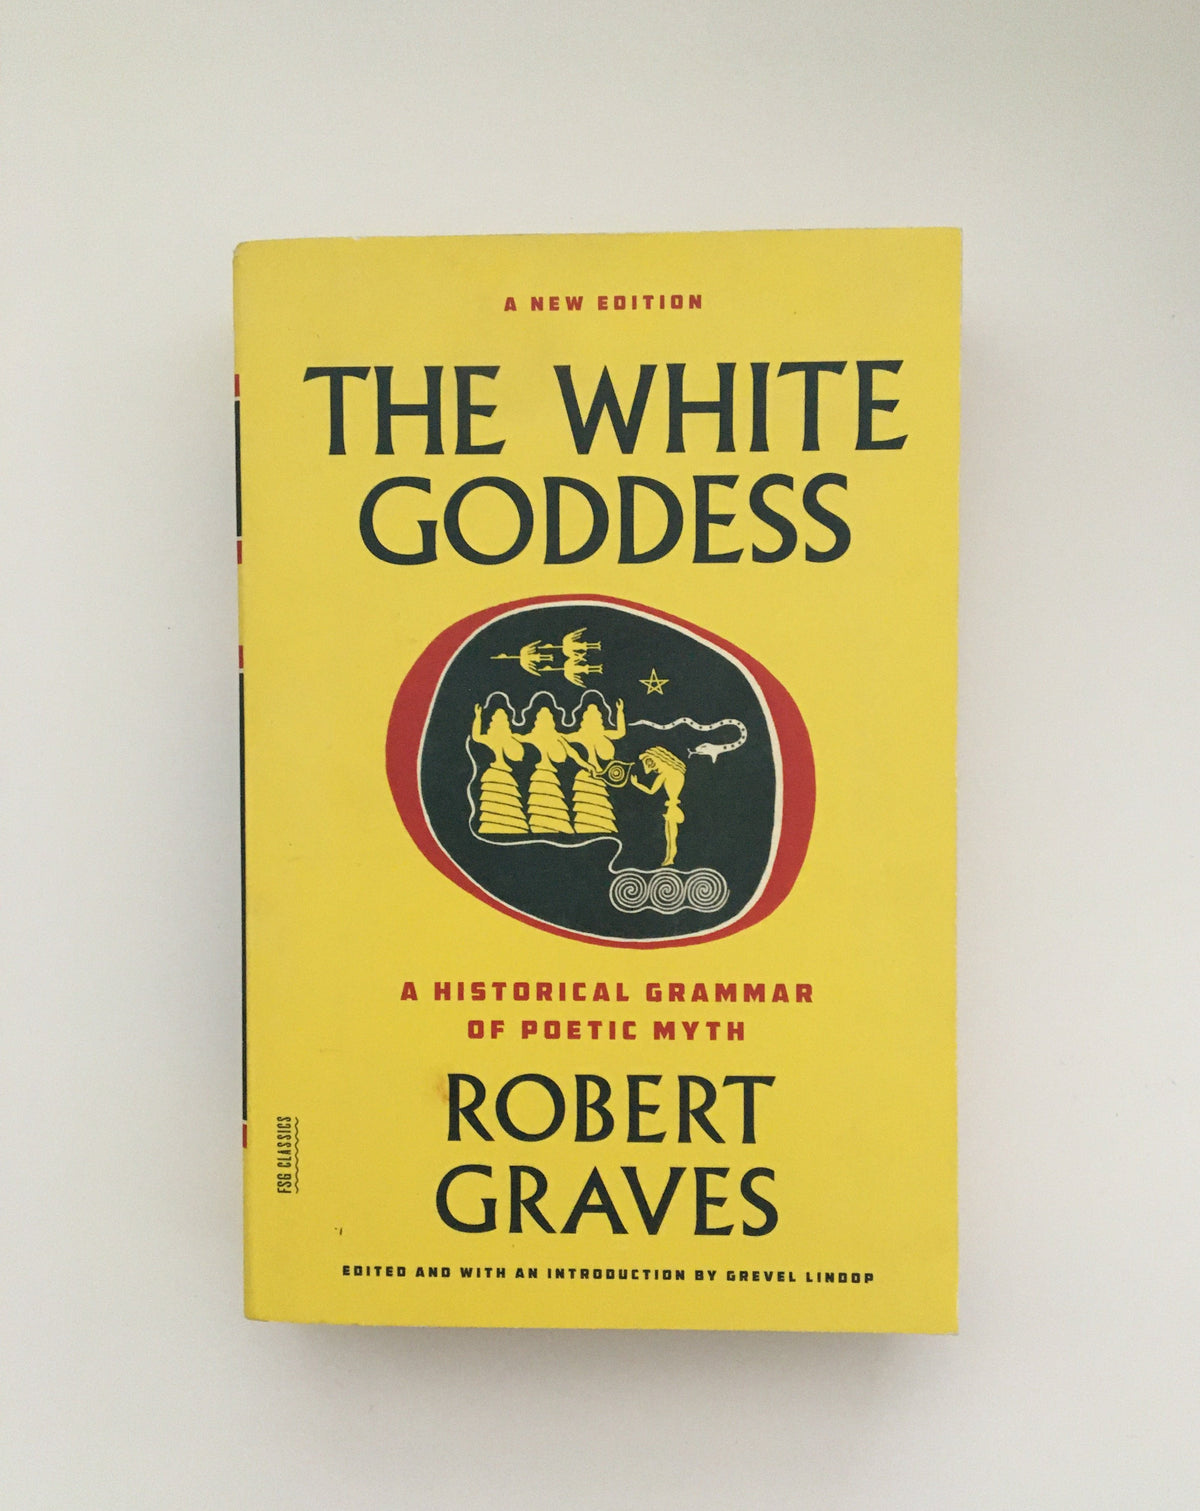 The White Goddess by Robert Graves, book, Ten Dollar Books, Ten Dollar Books